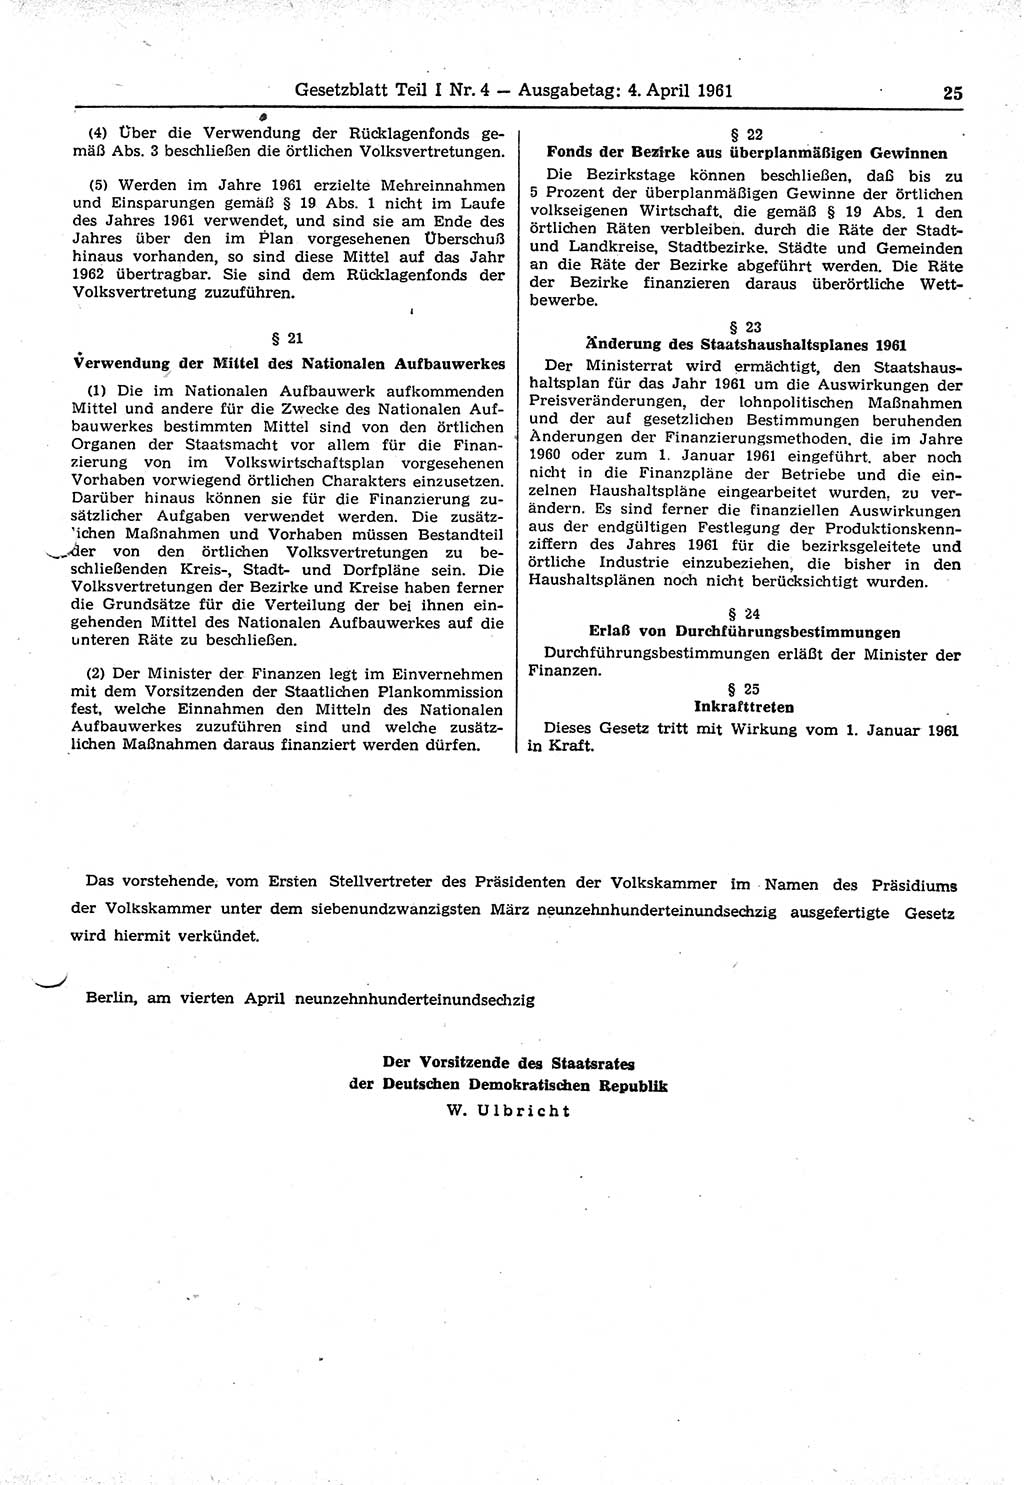 Gesetzblatt (GBl.) der Deutschen Demokratischen Republik (DDR) Teil Ⅰ 1961, Seite 25 (GBl. DDR Ⅰ 1961, S. 25)